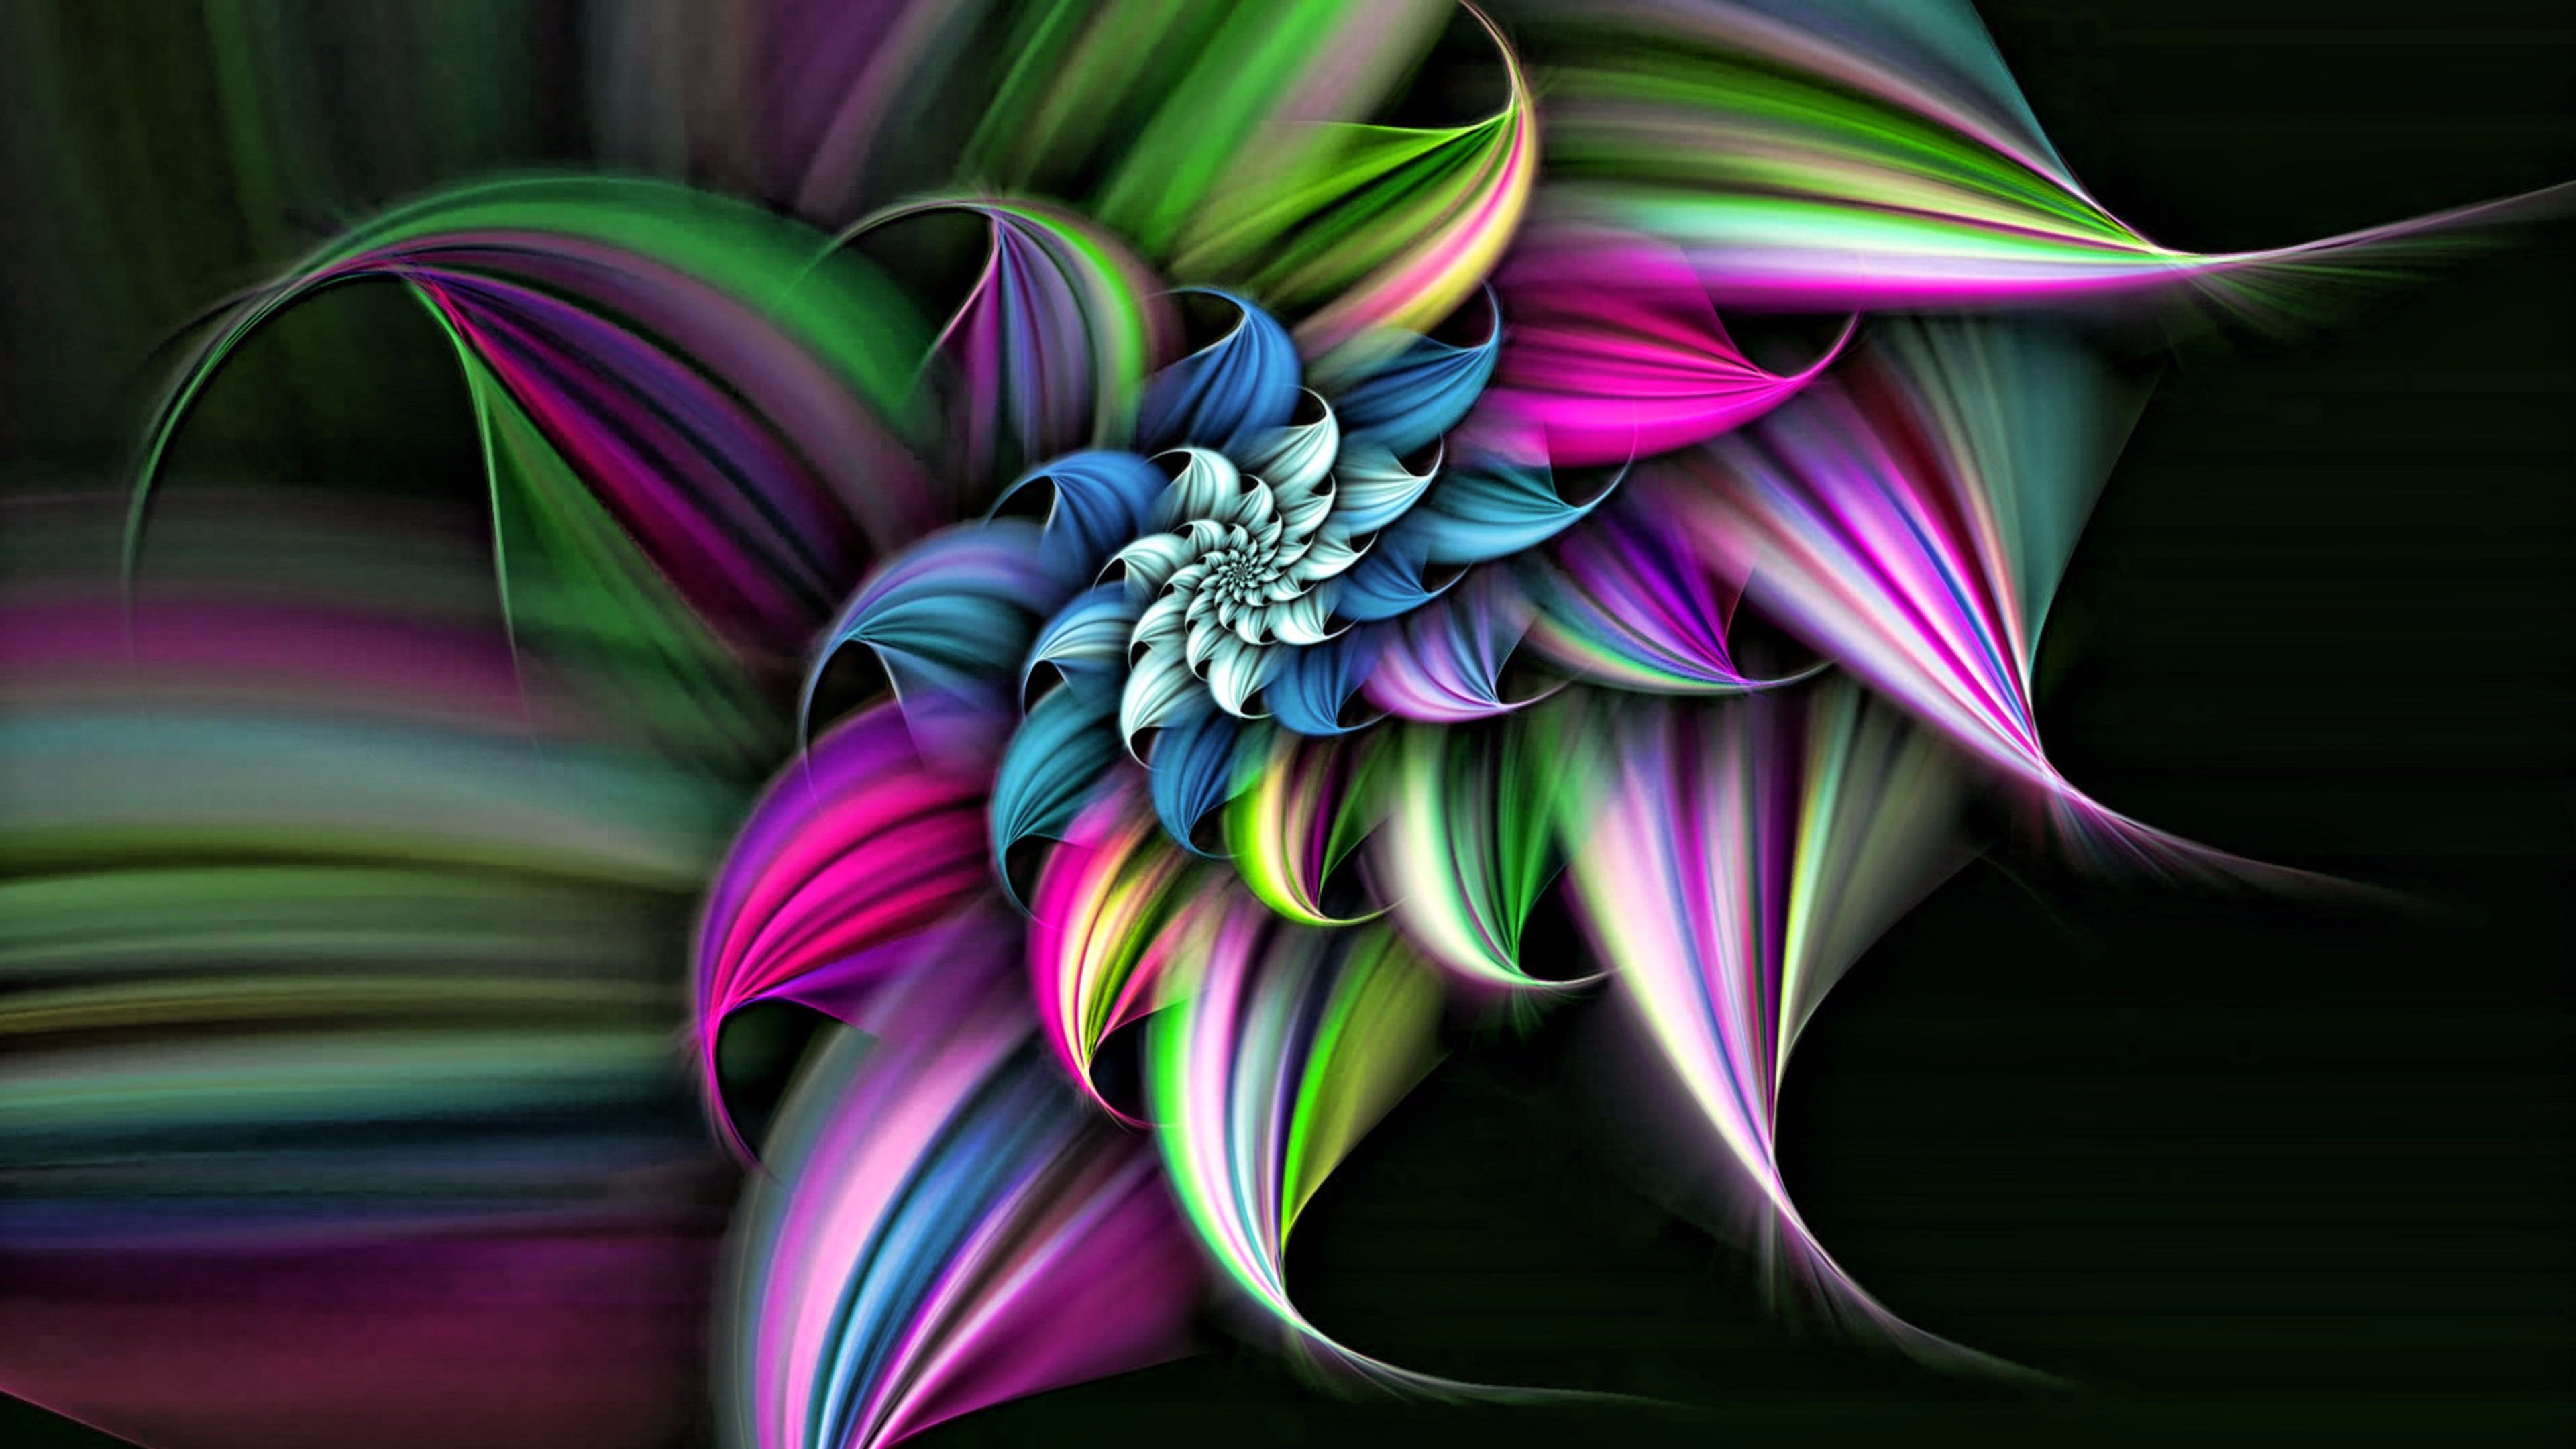 of Flower 4K wallpaper for your desktop or mobile screen